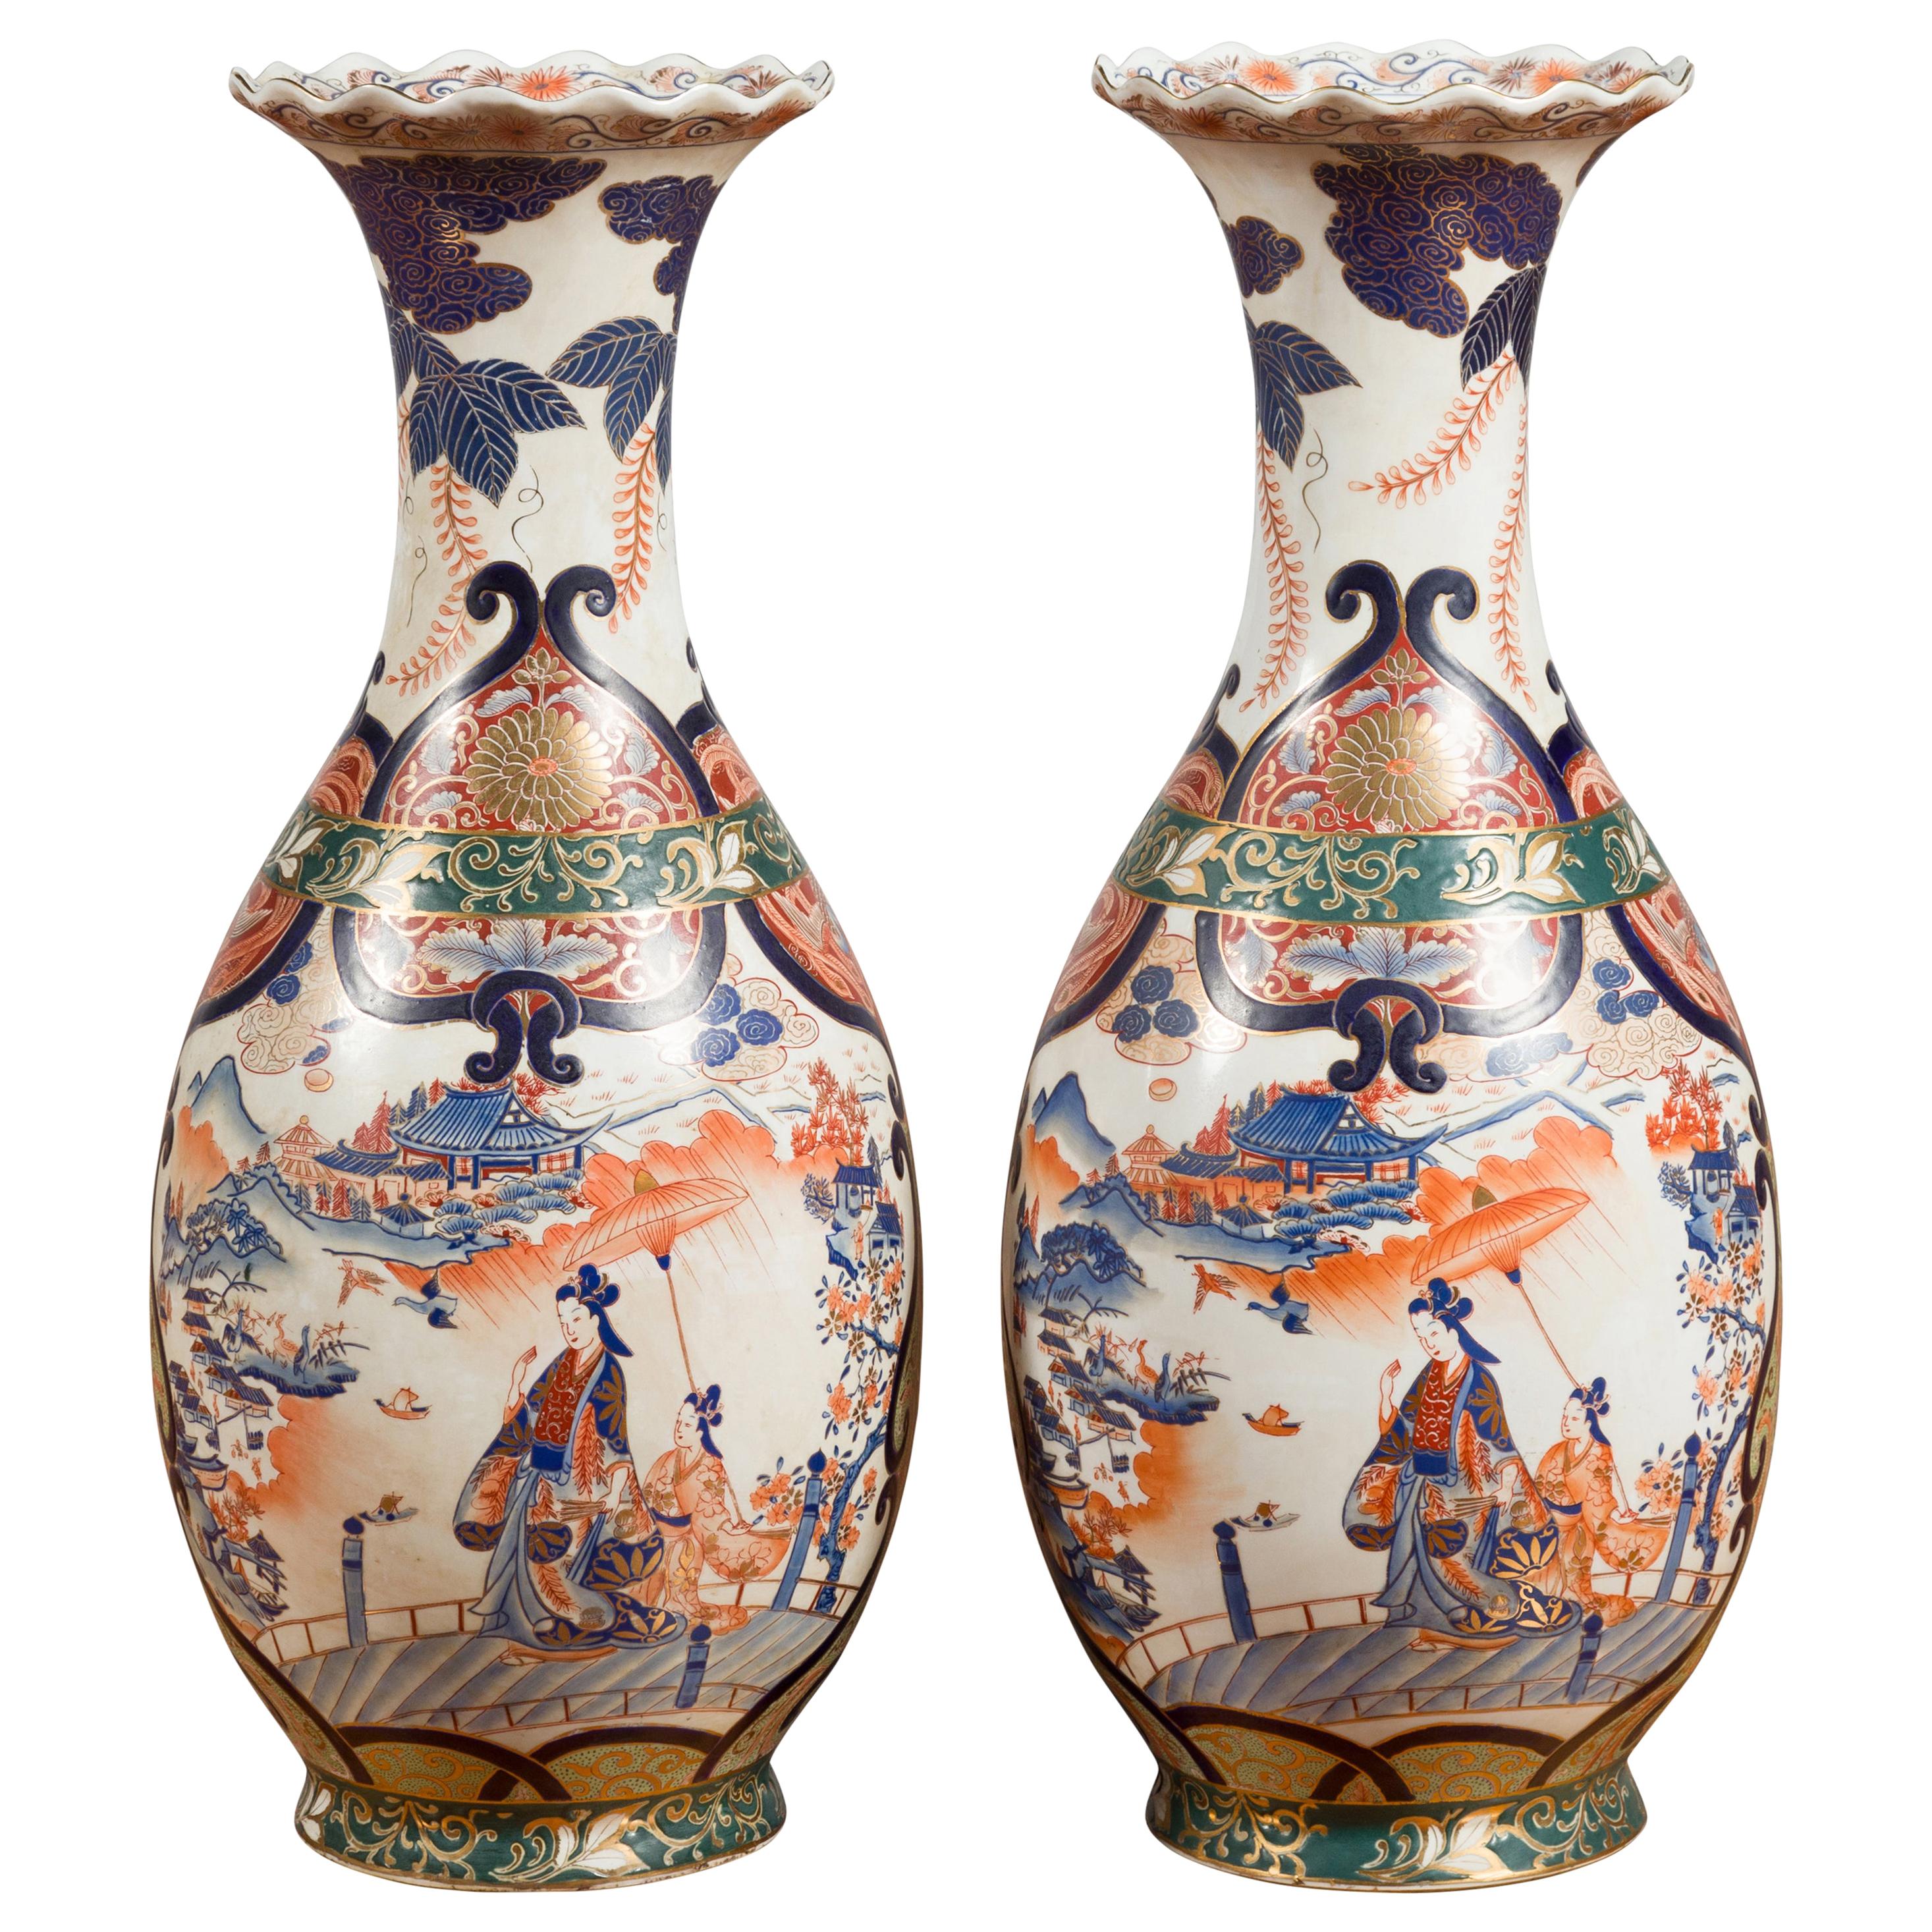 Paire de vases de palais chinois de style Arita avec décor bleu, orange, vert et or